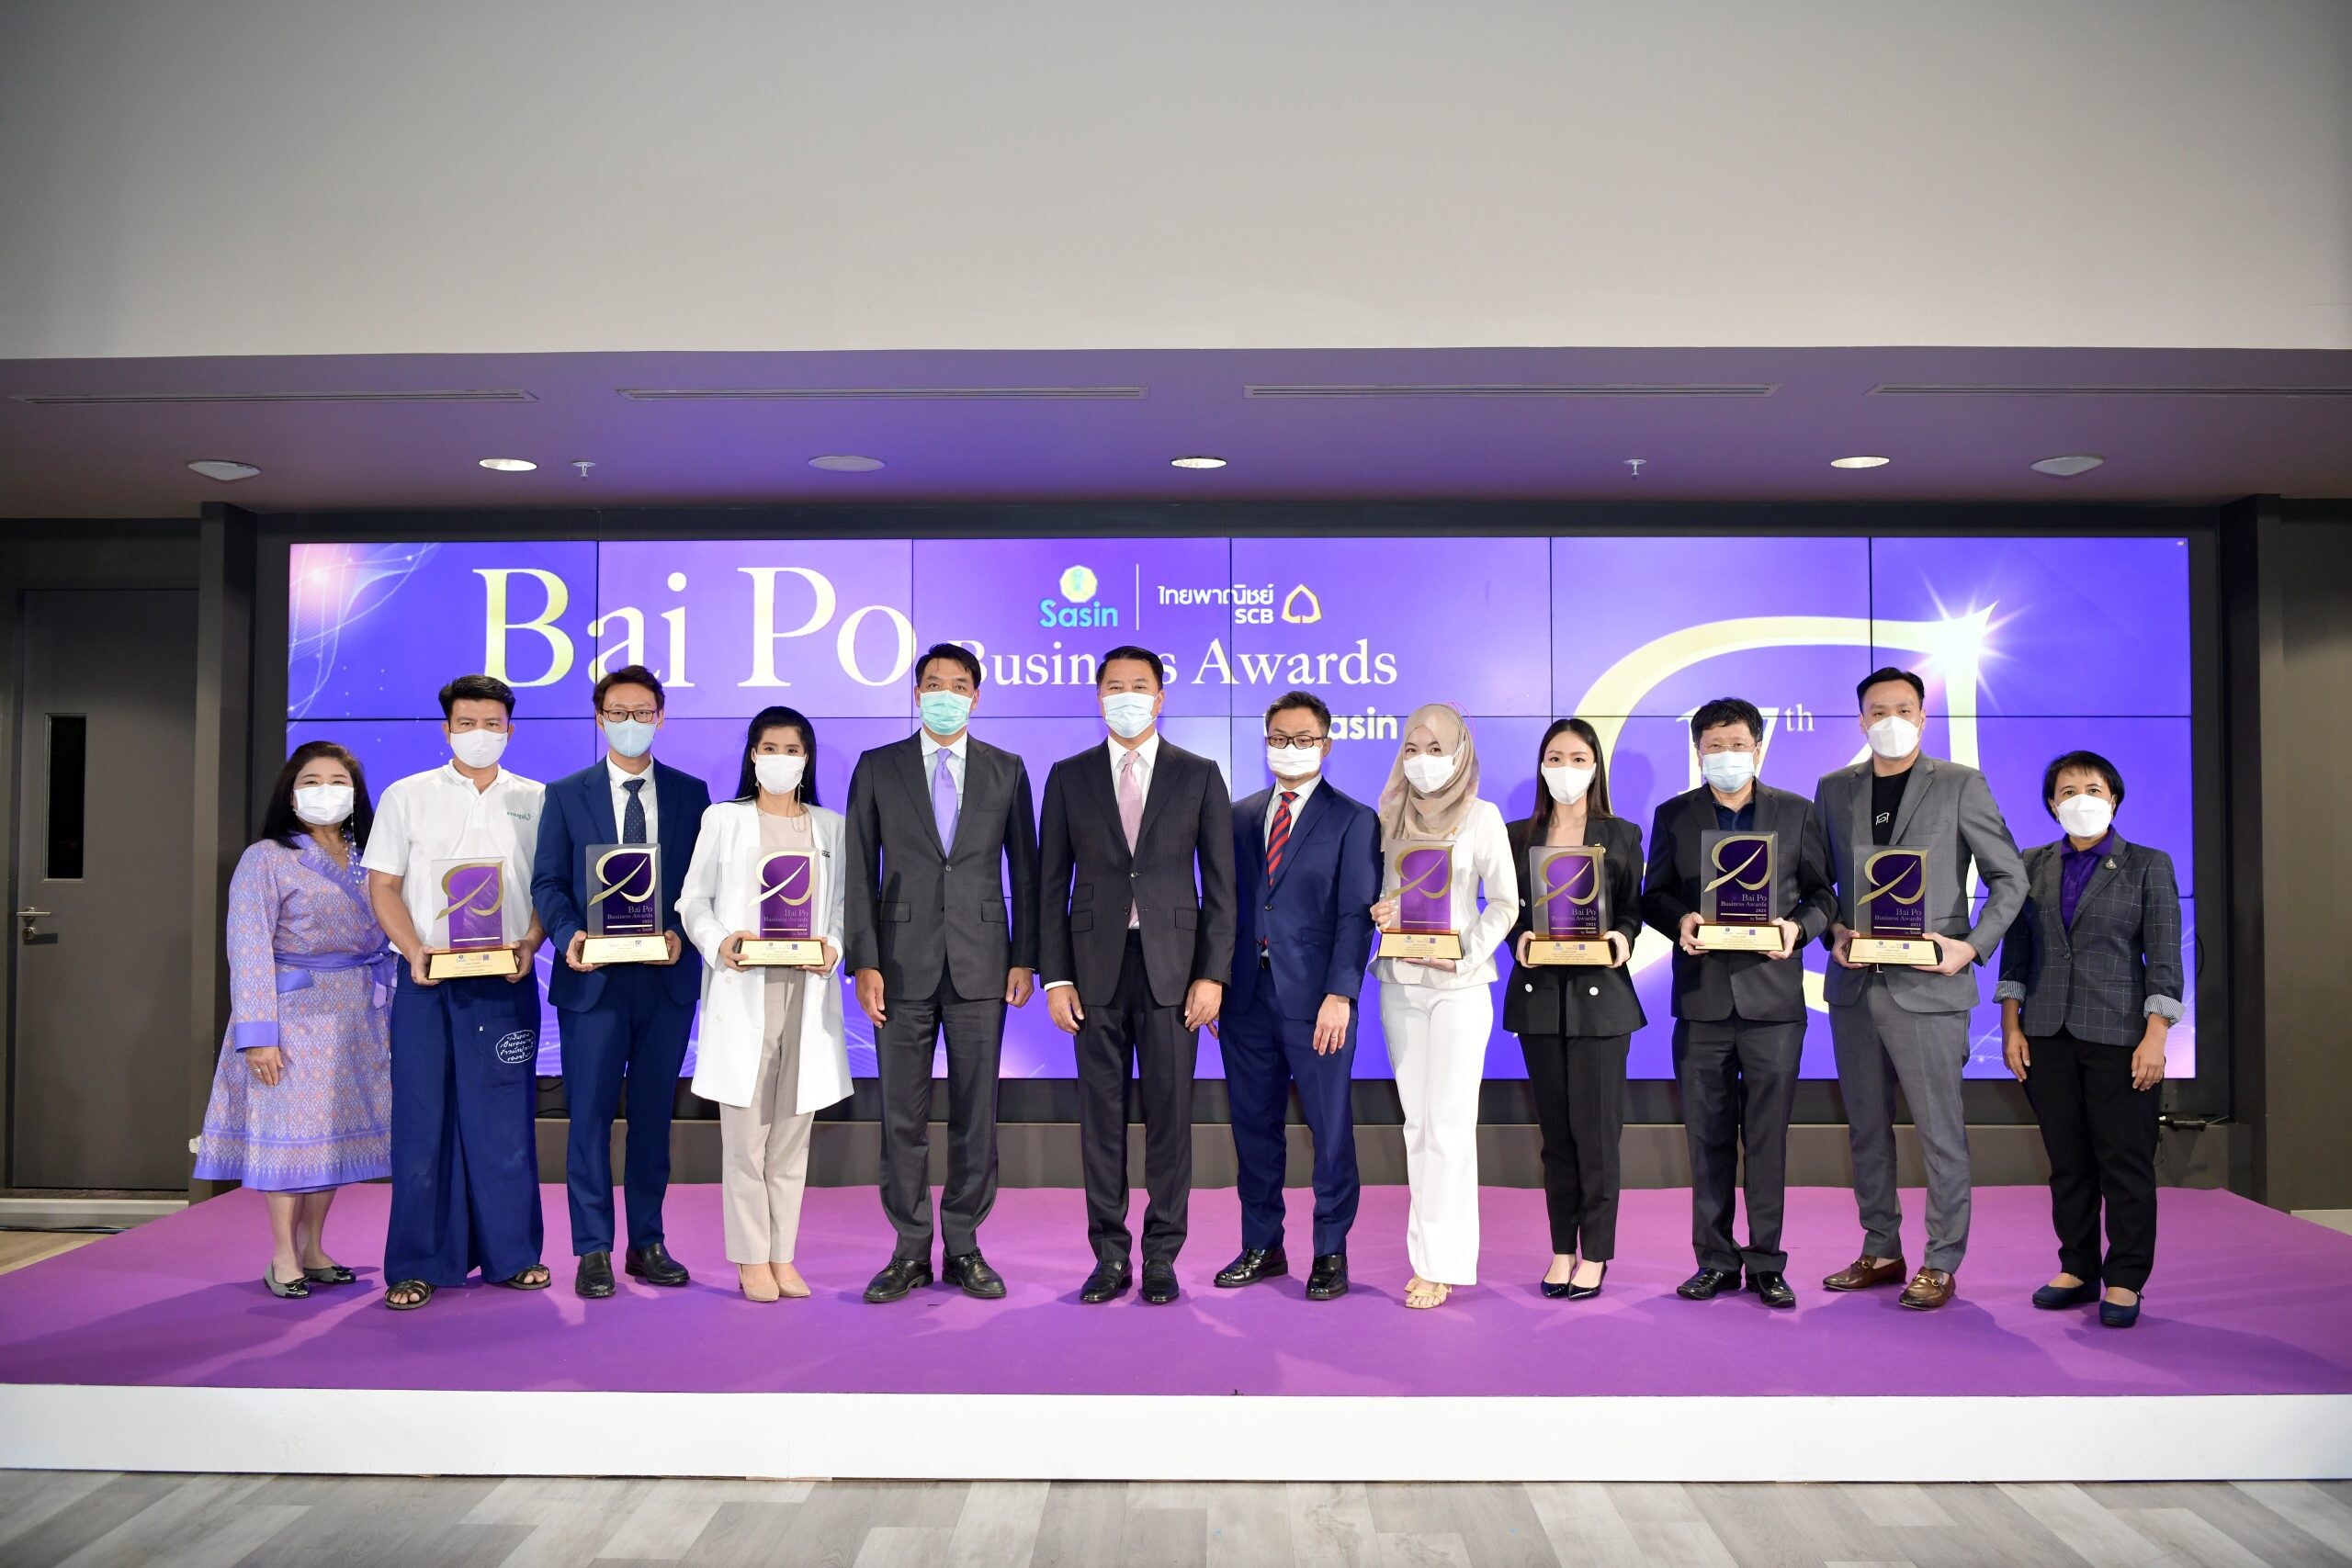 ไทยพาณิชย์- ศศินทร์ มอบรางวัล"Bai Po Business Awards by Sasin ครั้งที่ 17"